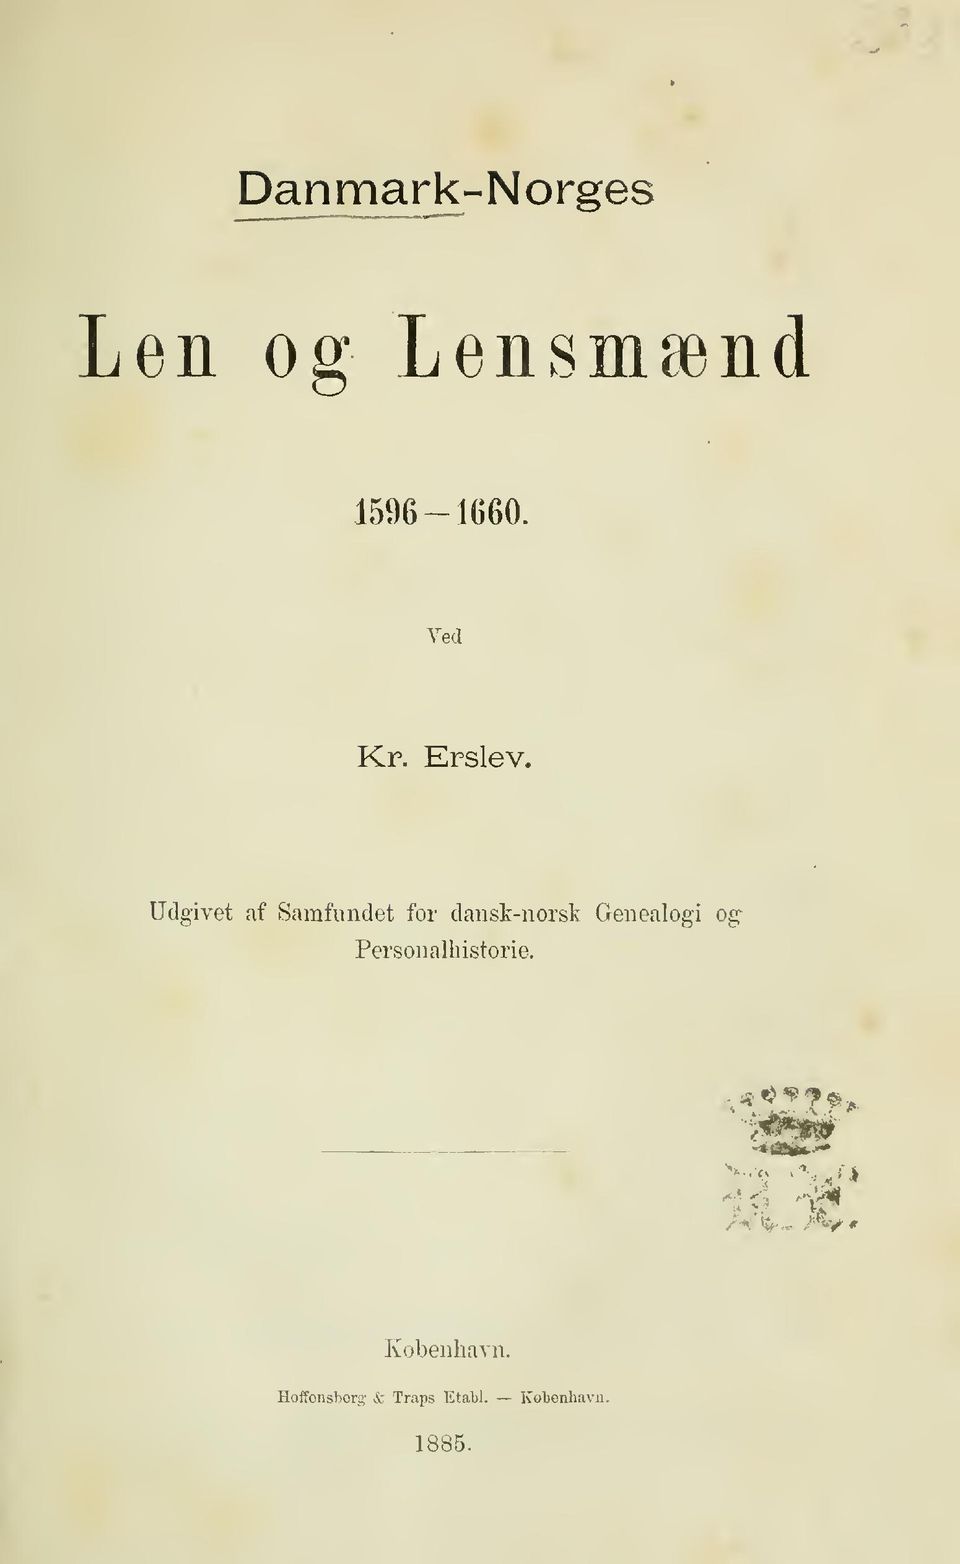 Udgivet af Samfundet for dansk-norsk Genealogi